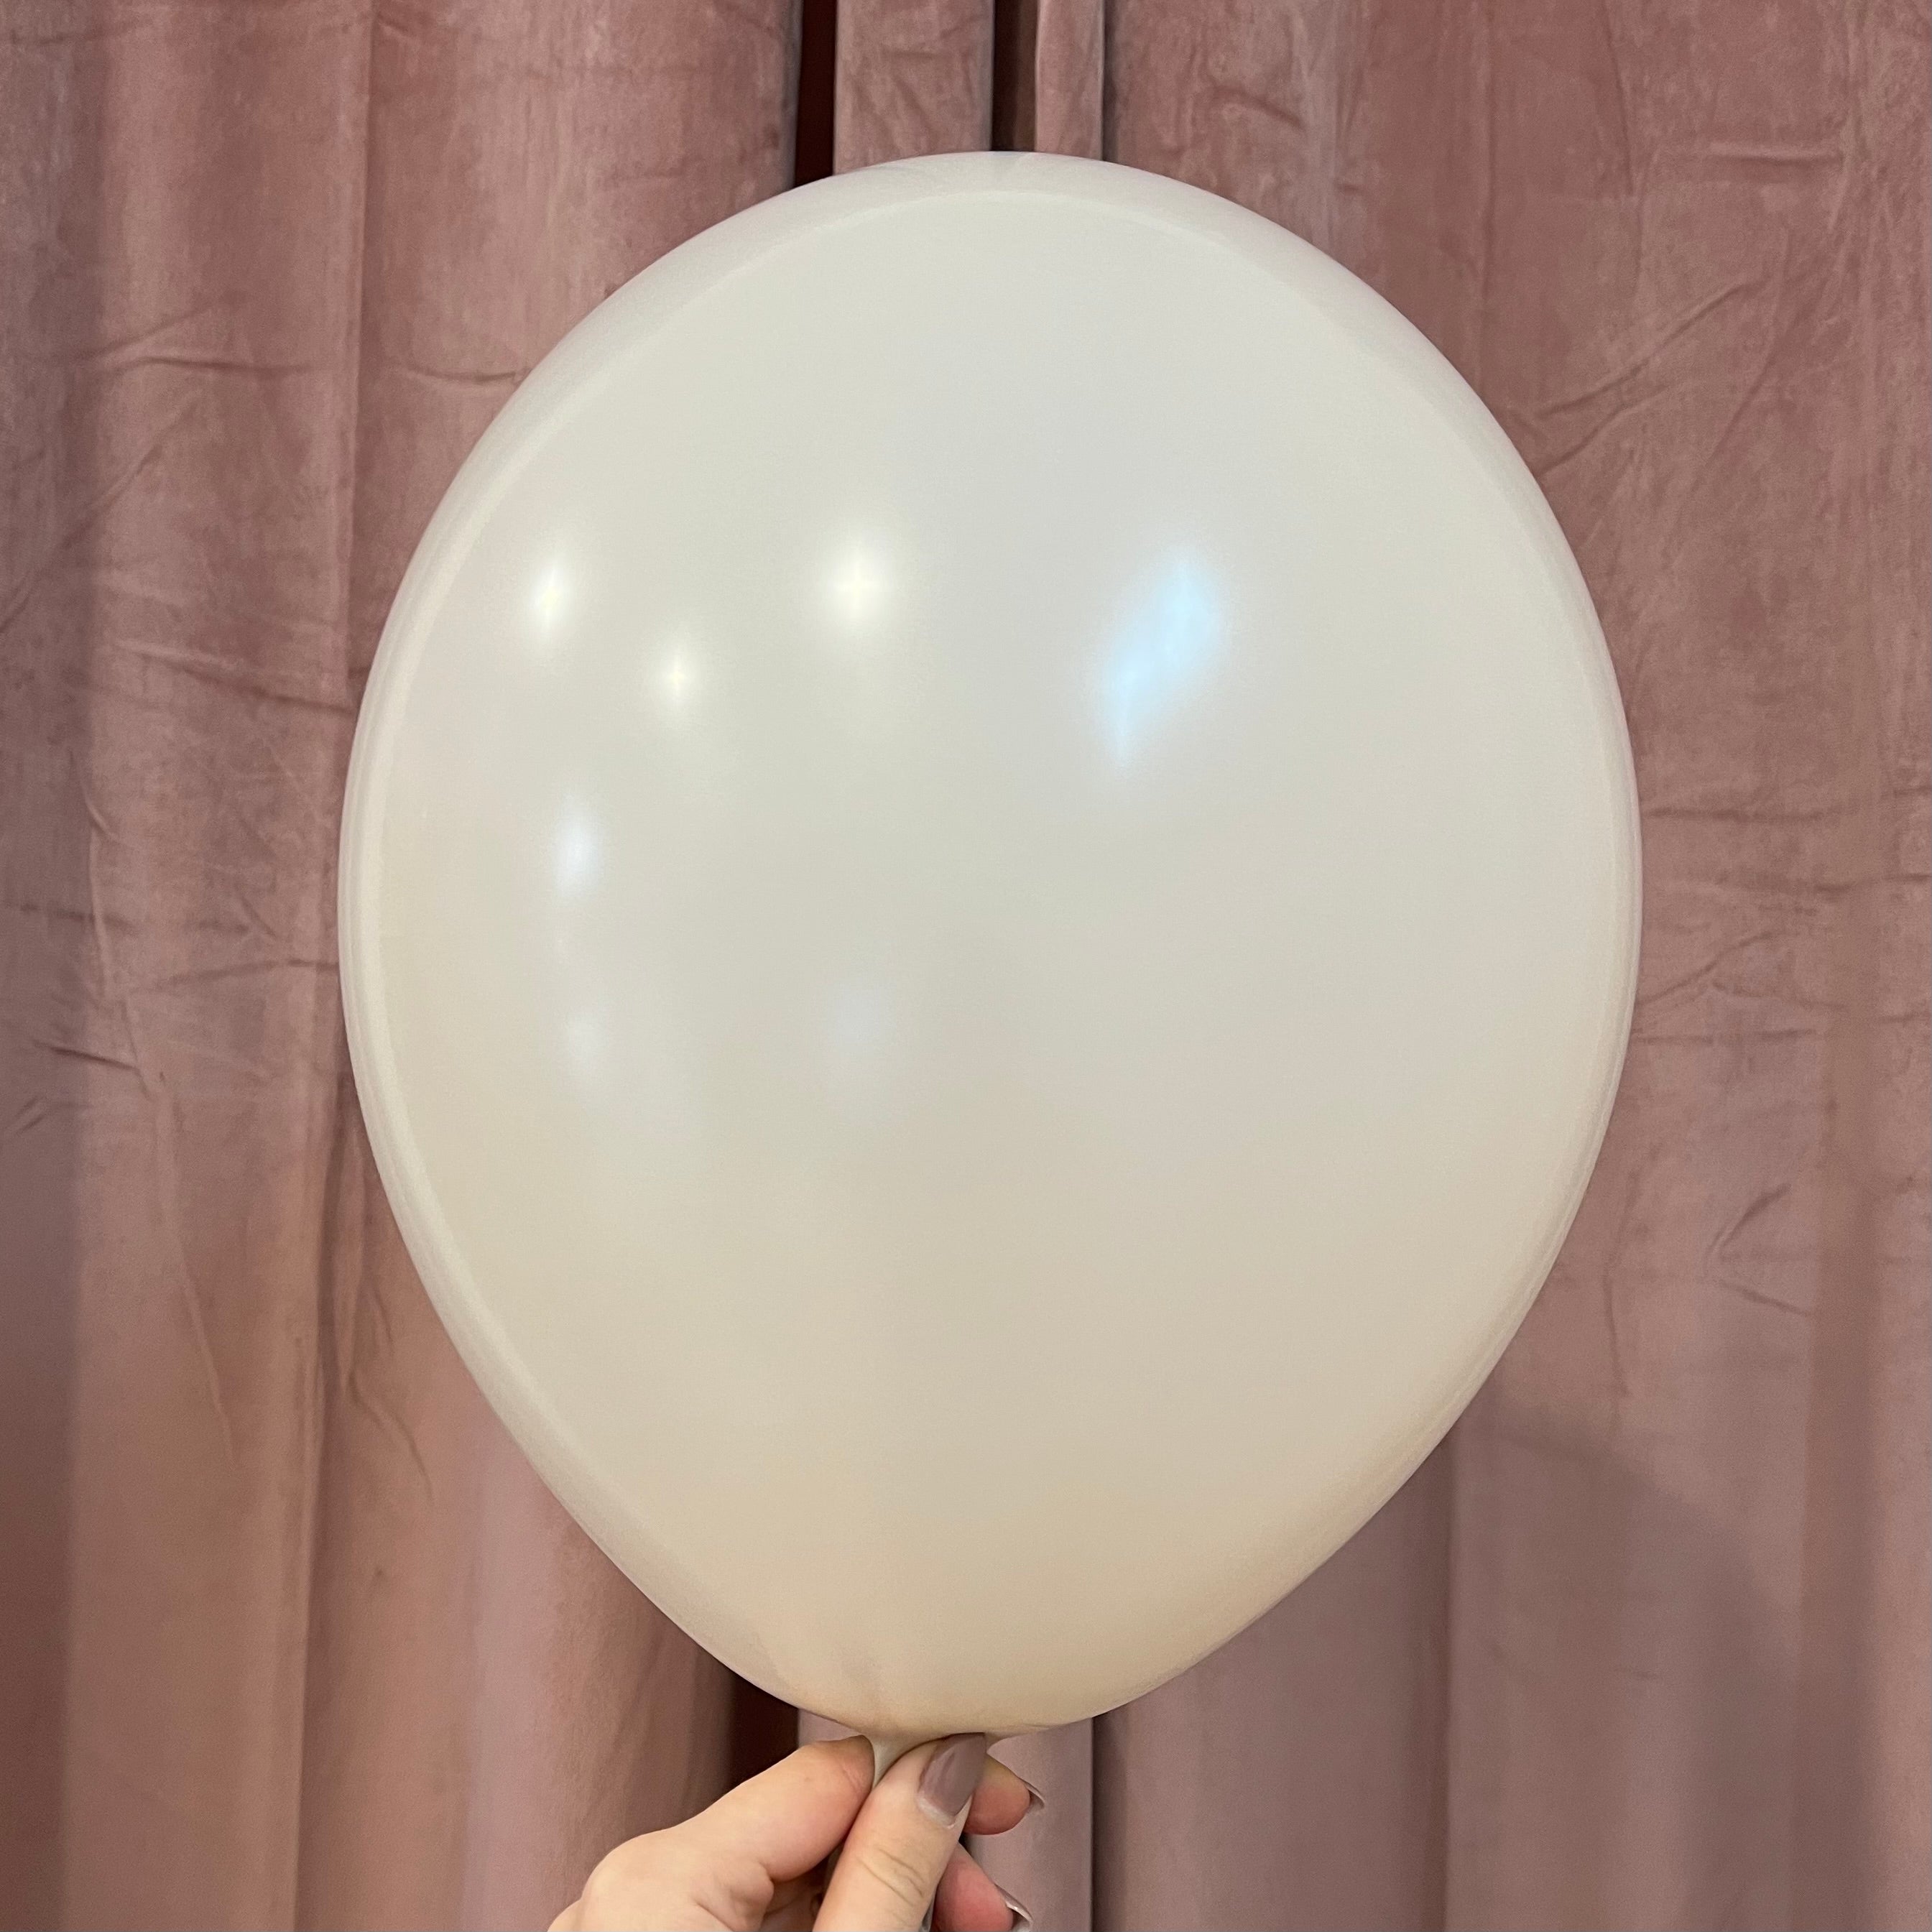 Strong baloni - Nude 30 cm, 10 kos